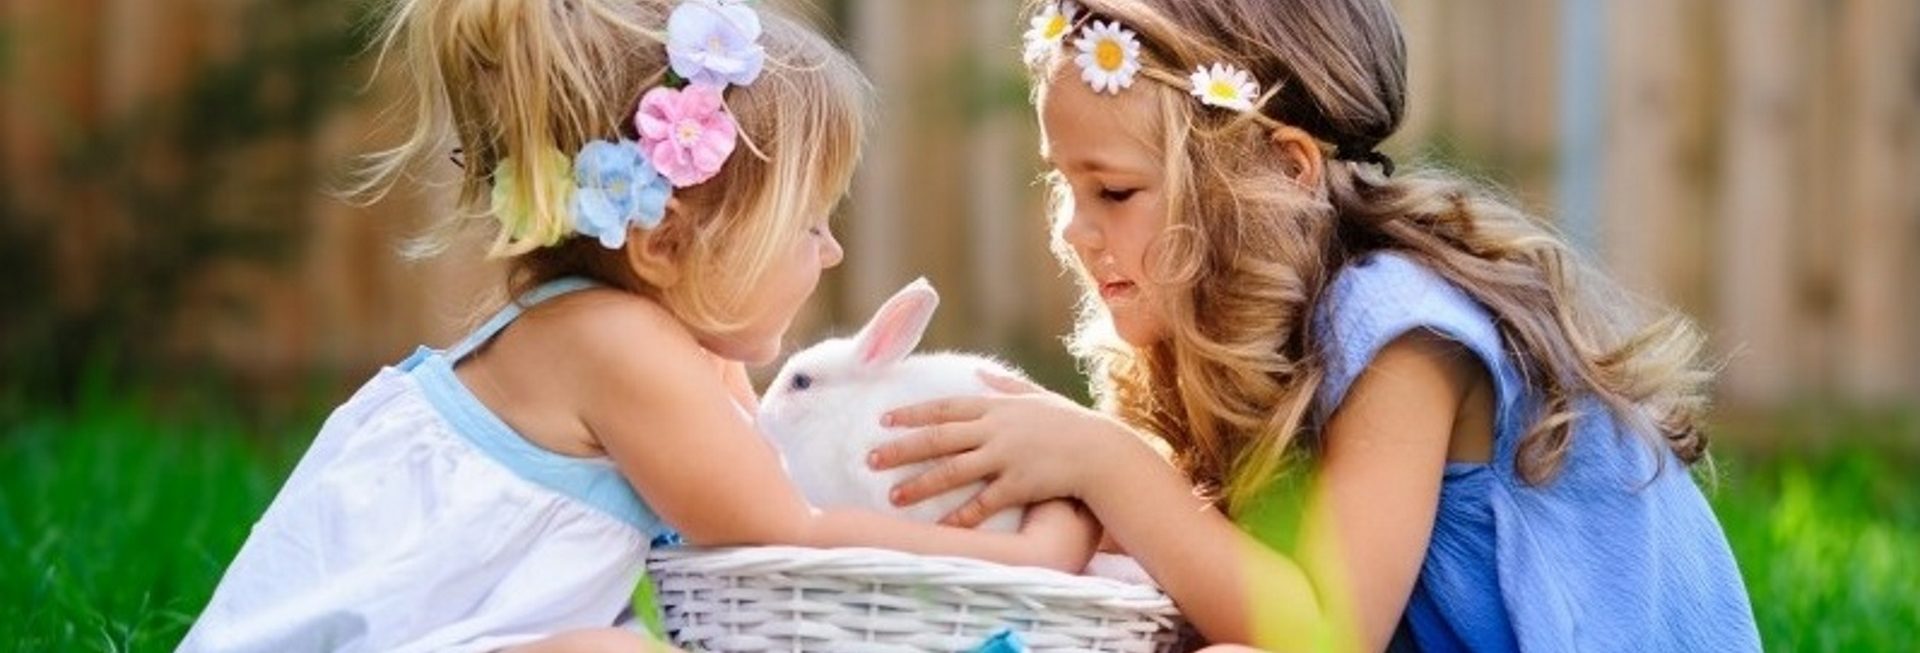 Zdjęcie przedstawia dwie dziewczynki w ogródku, które siedzą przy koszyczku wiklinowym w którym znajduje się królik.      